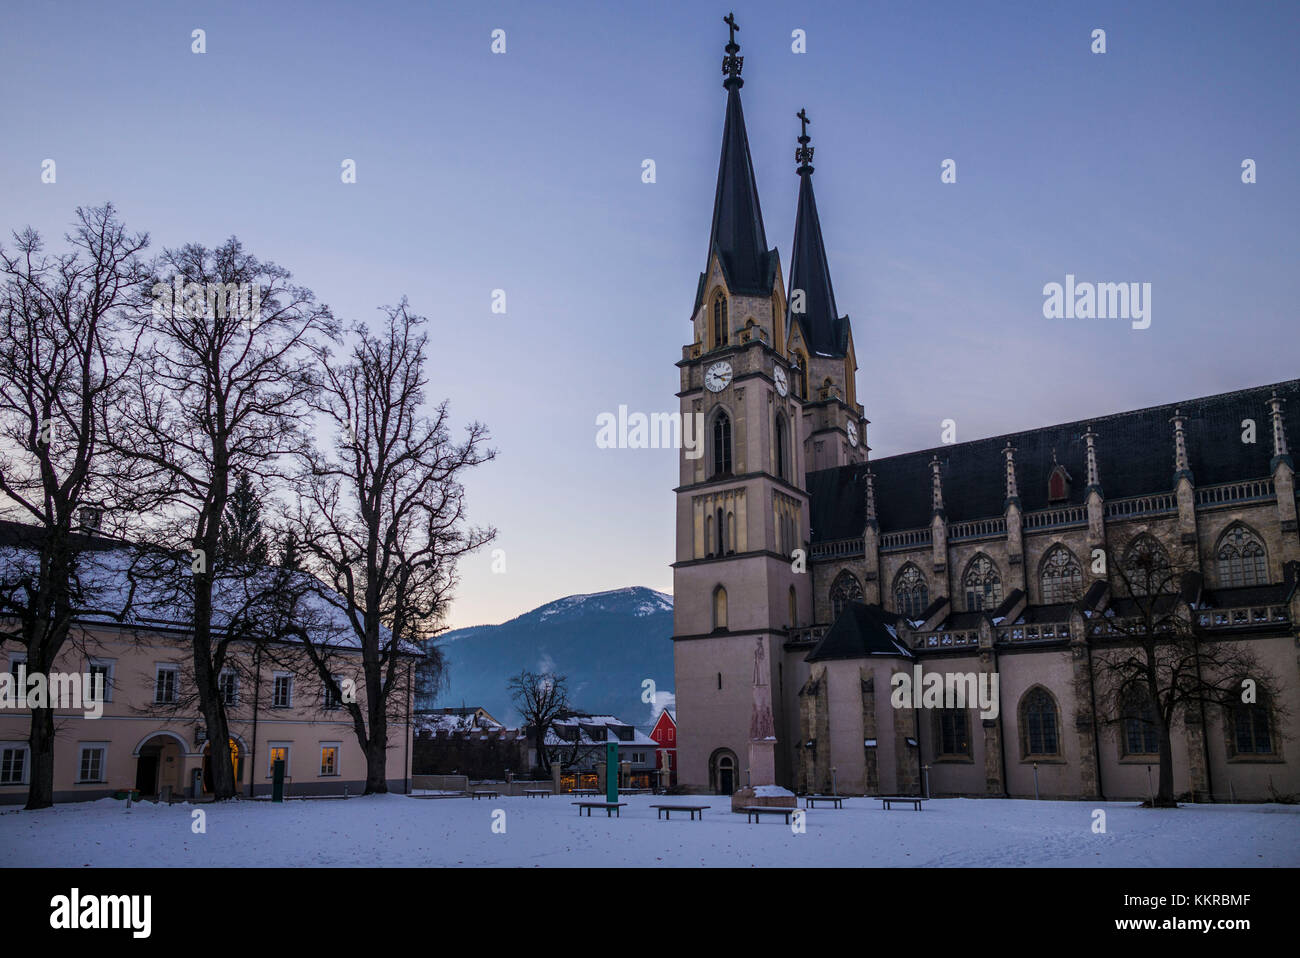 Österreich, Steiermark, Admont, Stift Admont, Außen, winter Stockfotografie  - Alamy